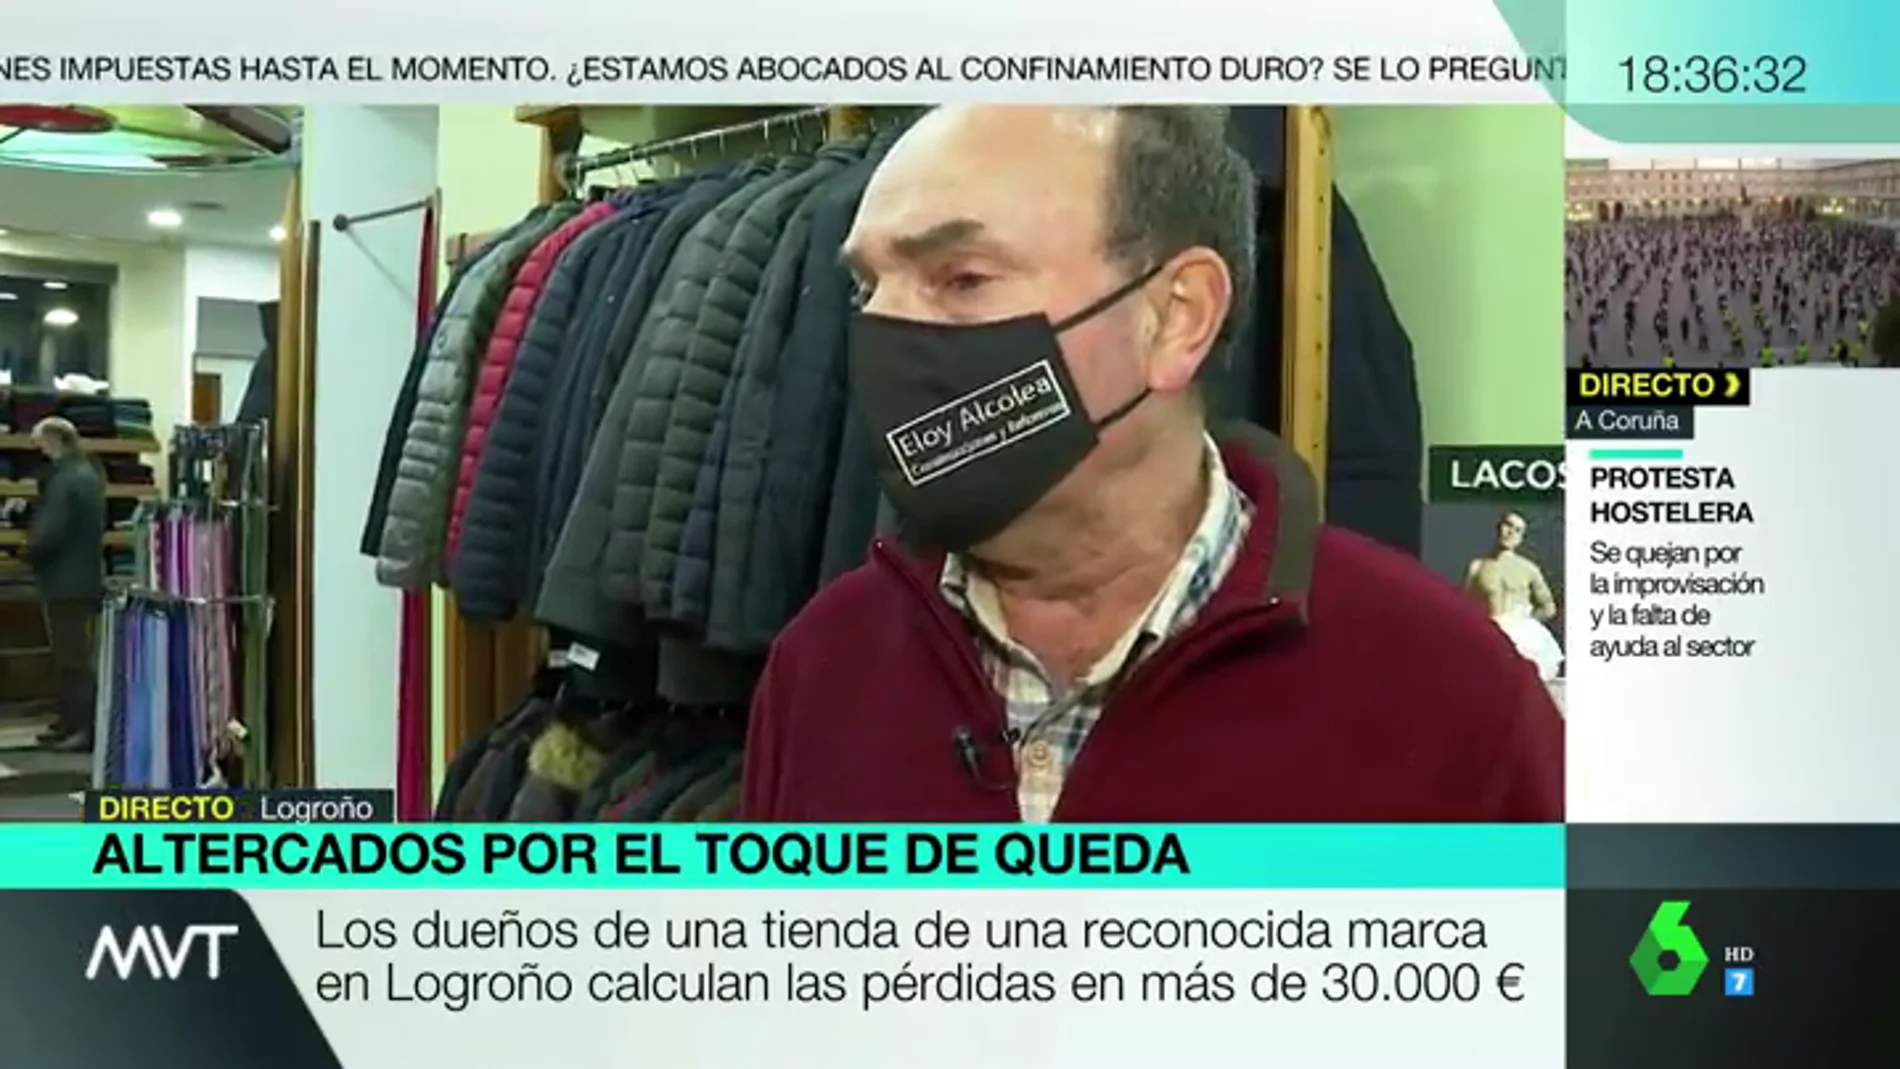 Habla el propietario de una tienda destrozada por los disturbios en Logroño: "Es una imagen difícil de digerir, impresionante"